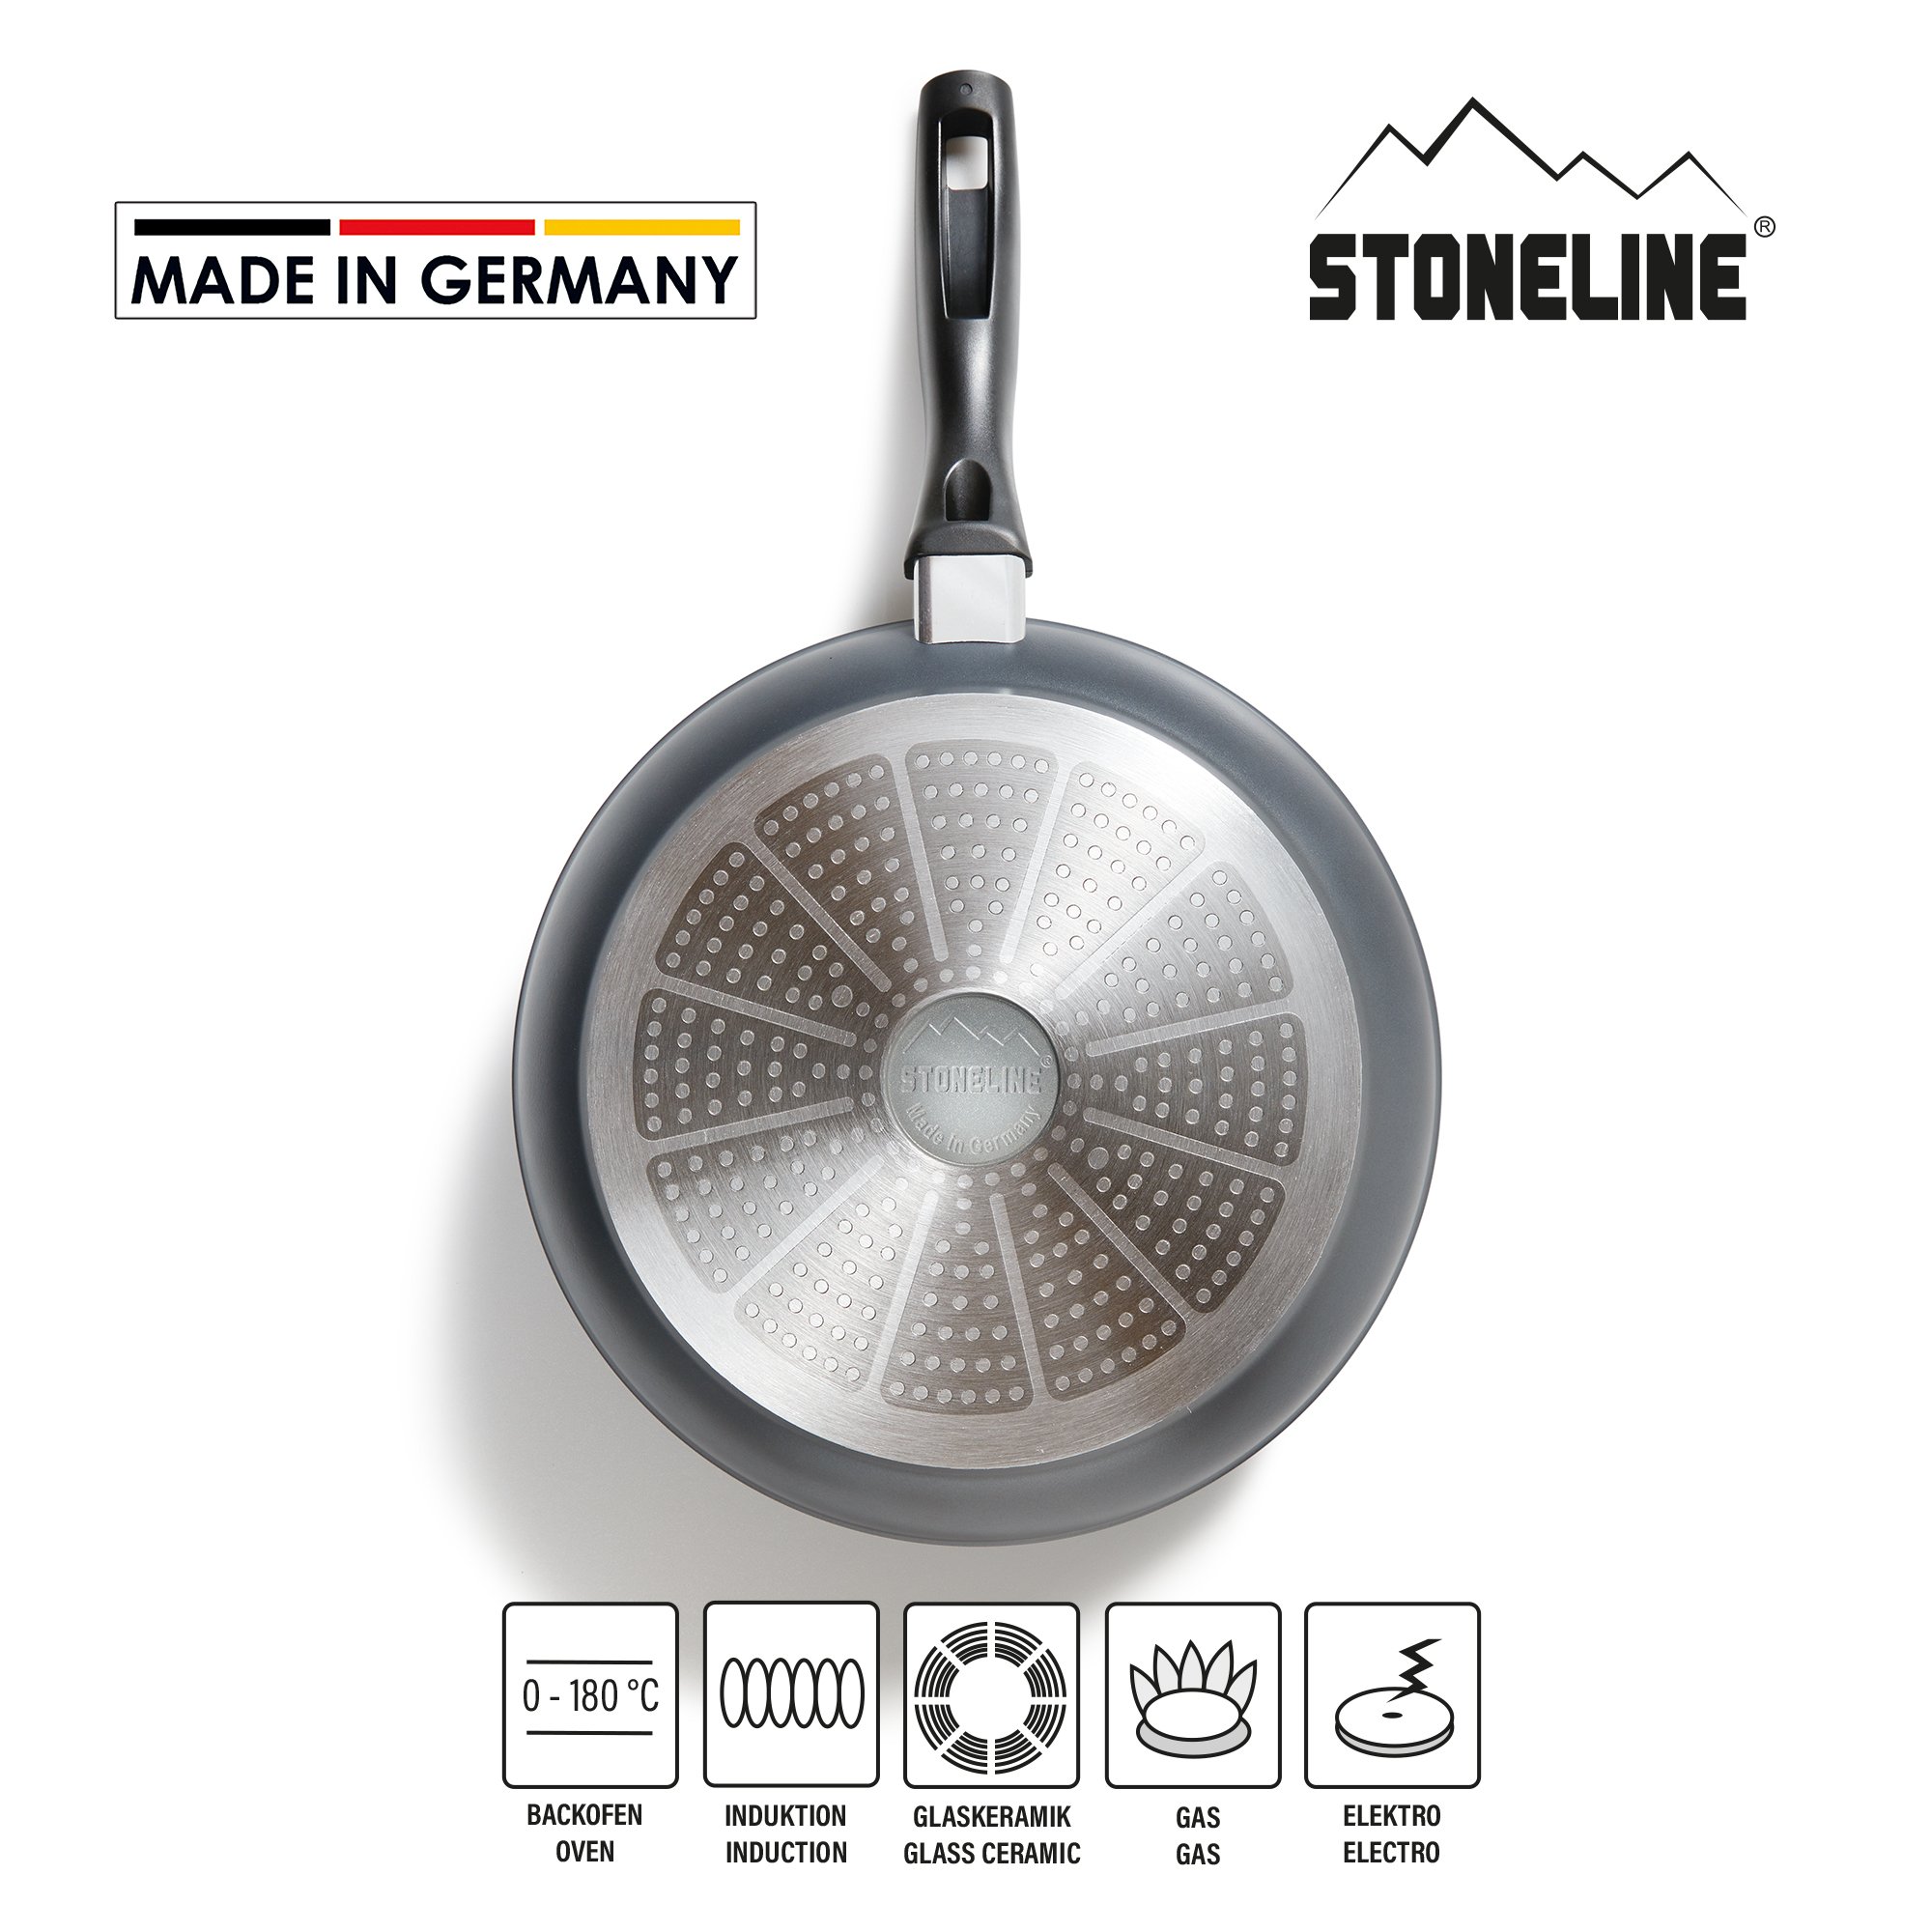 STONELINE® sartén 28 cm, Made in Germany, sartén con revestimiento antiadherente, apta para inducción